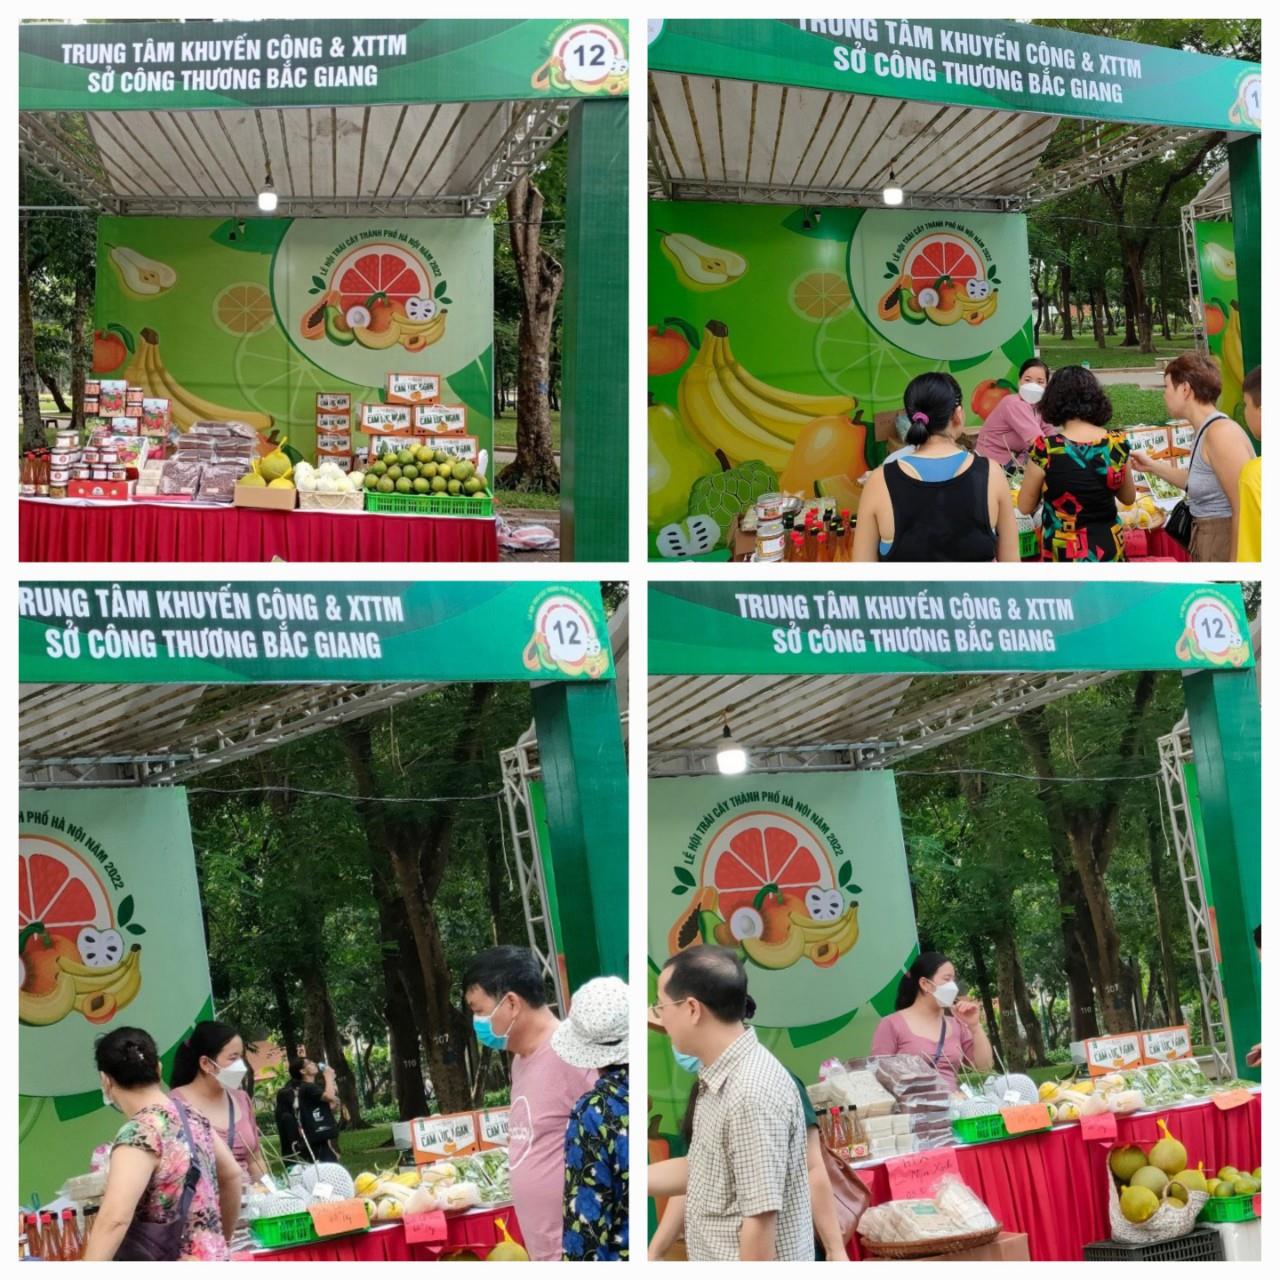 Tỉnh Bắc Giang tổ chức gian hàng tham gia Lễ hội trái cây thành phố Hà Nội năm 2022